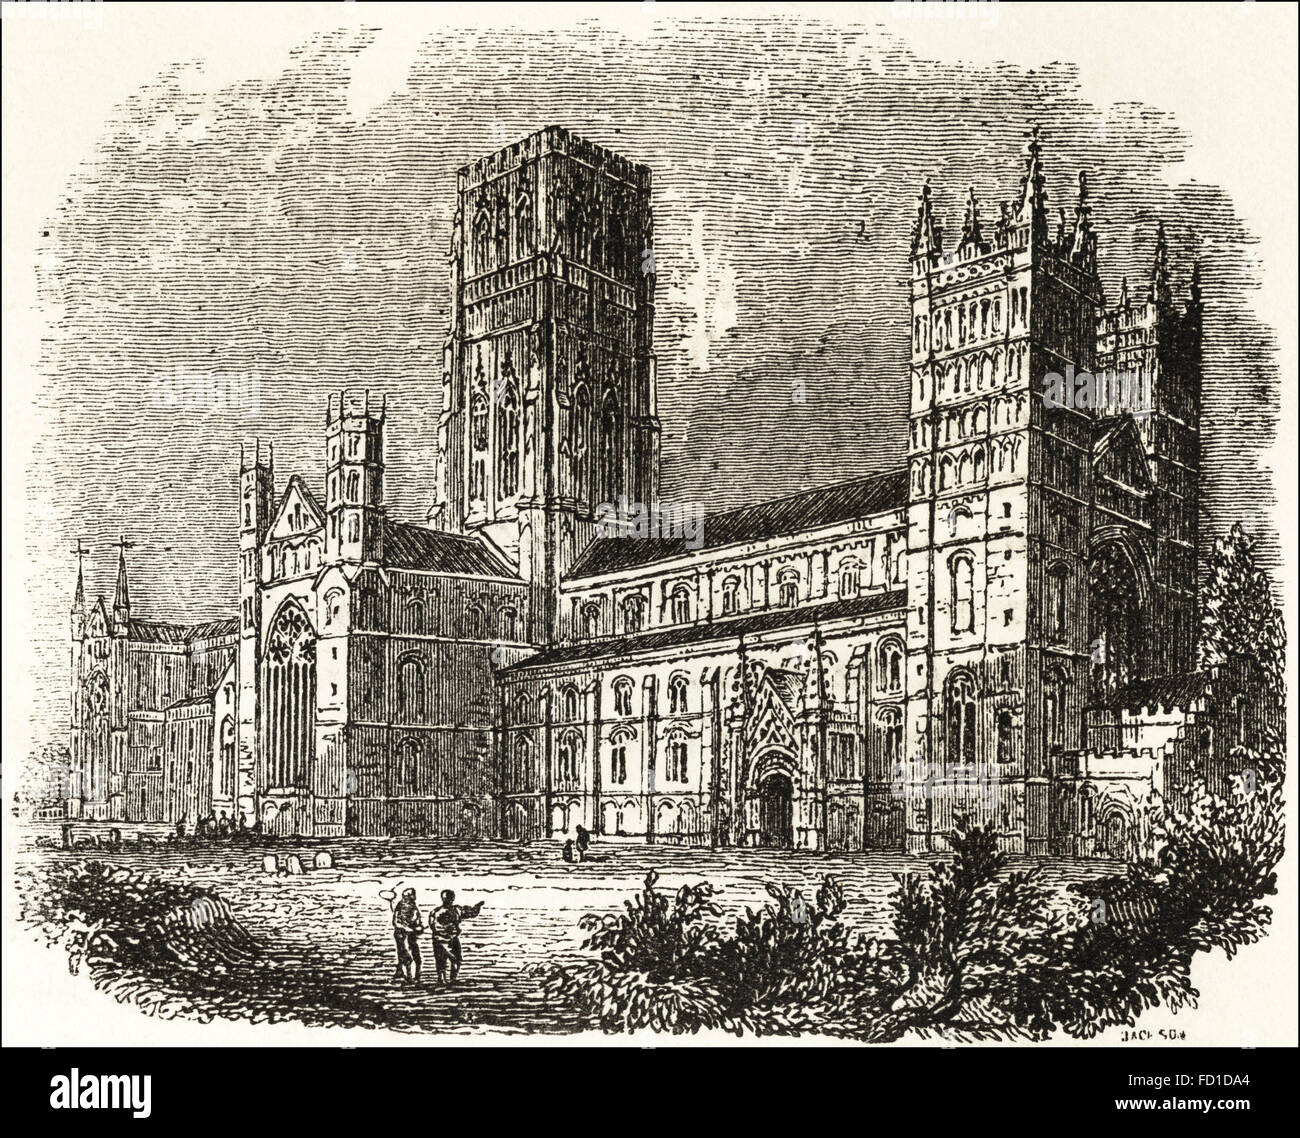 Blick auf die Kathedrale von Durham 1093 gegründet. Viktorianischen Holzschnitt, Kupferstich, ca. 1845. Stockfoto